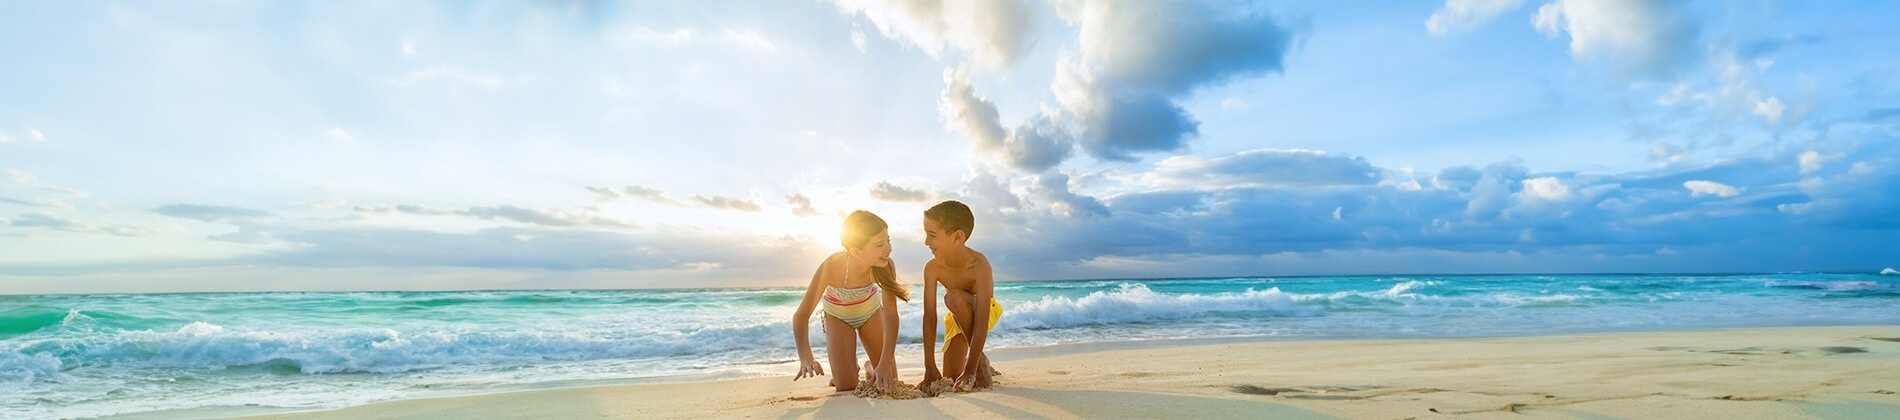 um menino e uma menina brincando na praia ao lado do oceano